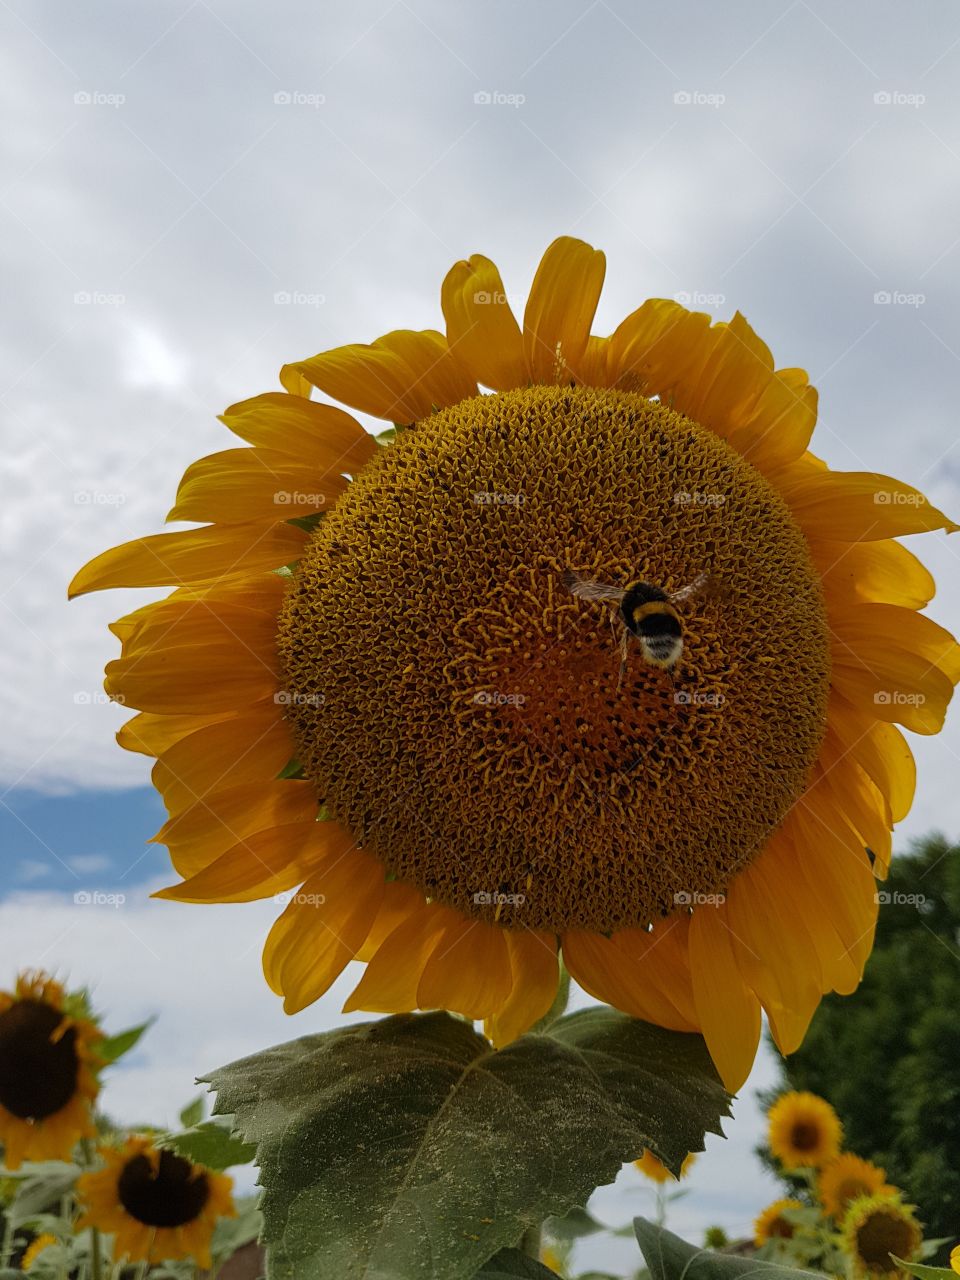 Bee in flight towards a sunflower in a flowered field in summer